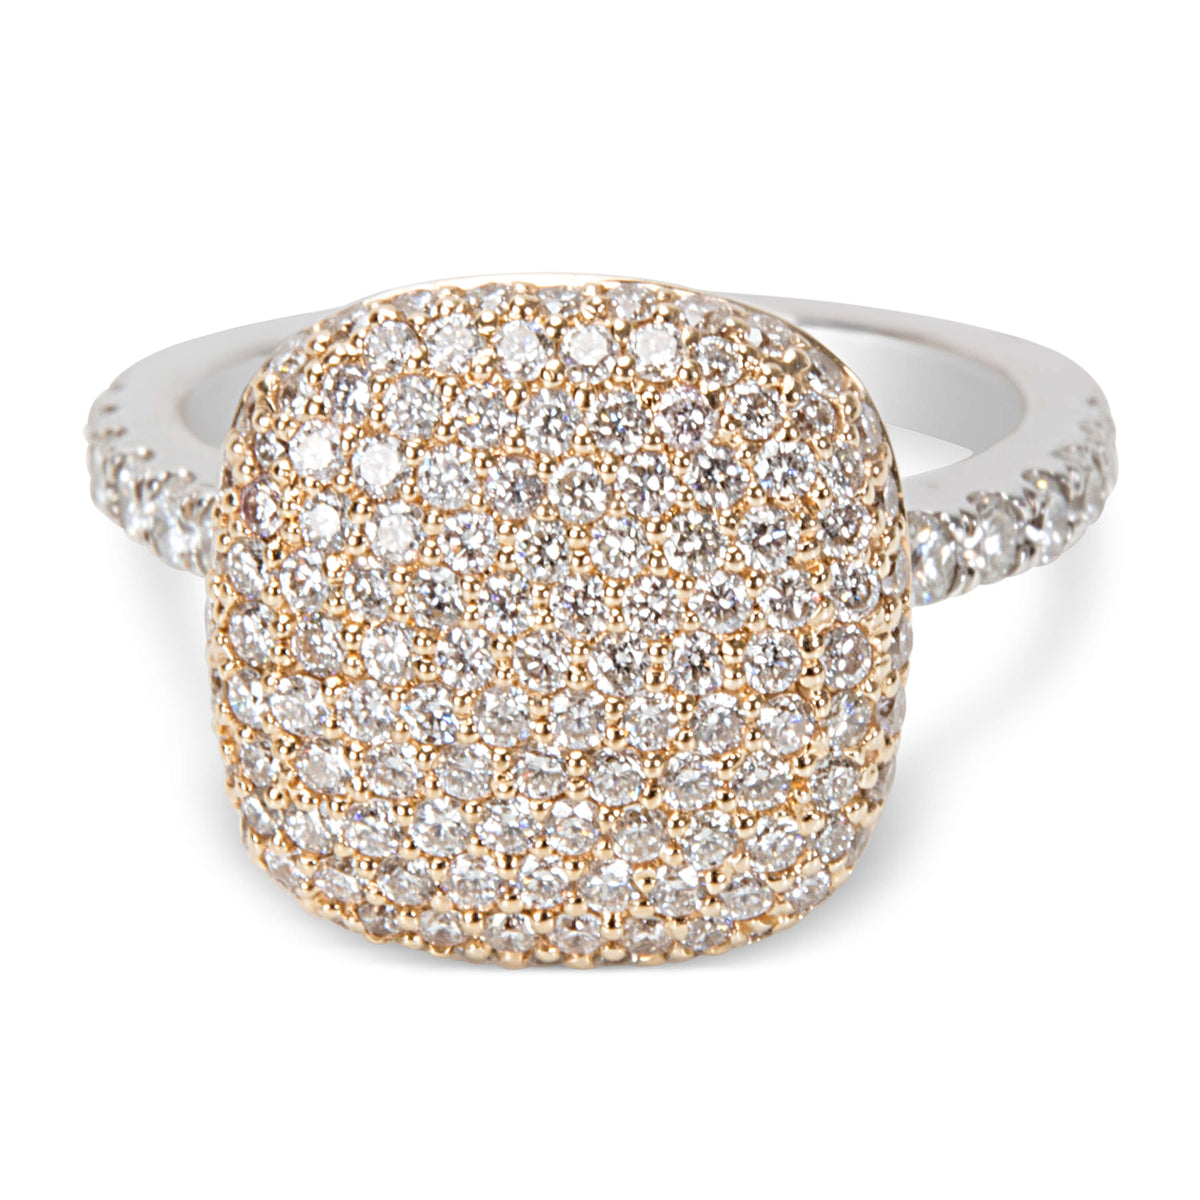 De Hago Pave Diamond Fashion Ring with a Square Top Design 1.38ctw